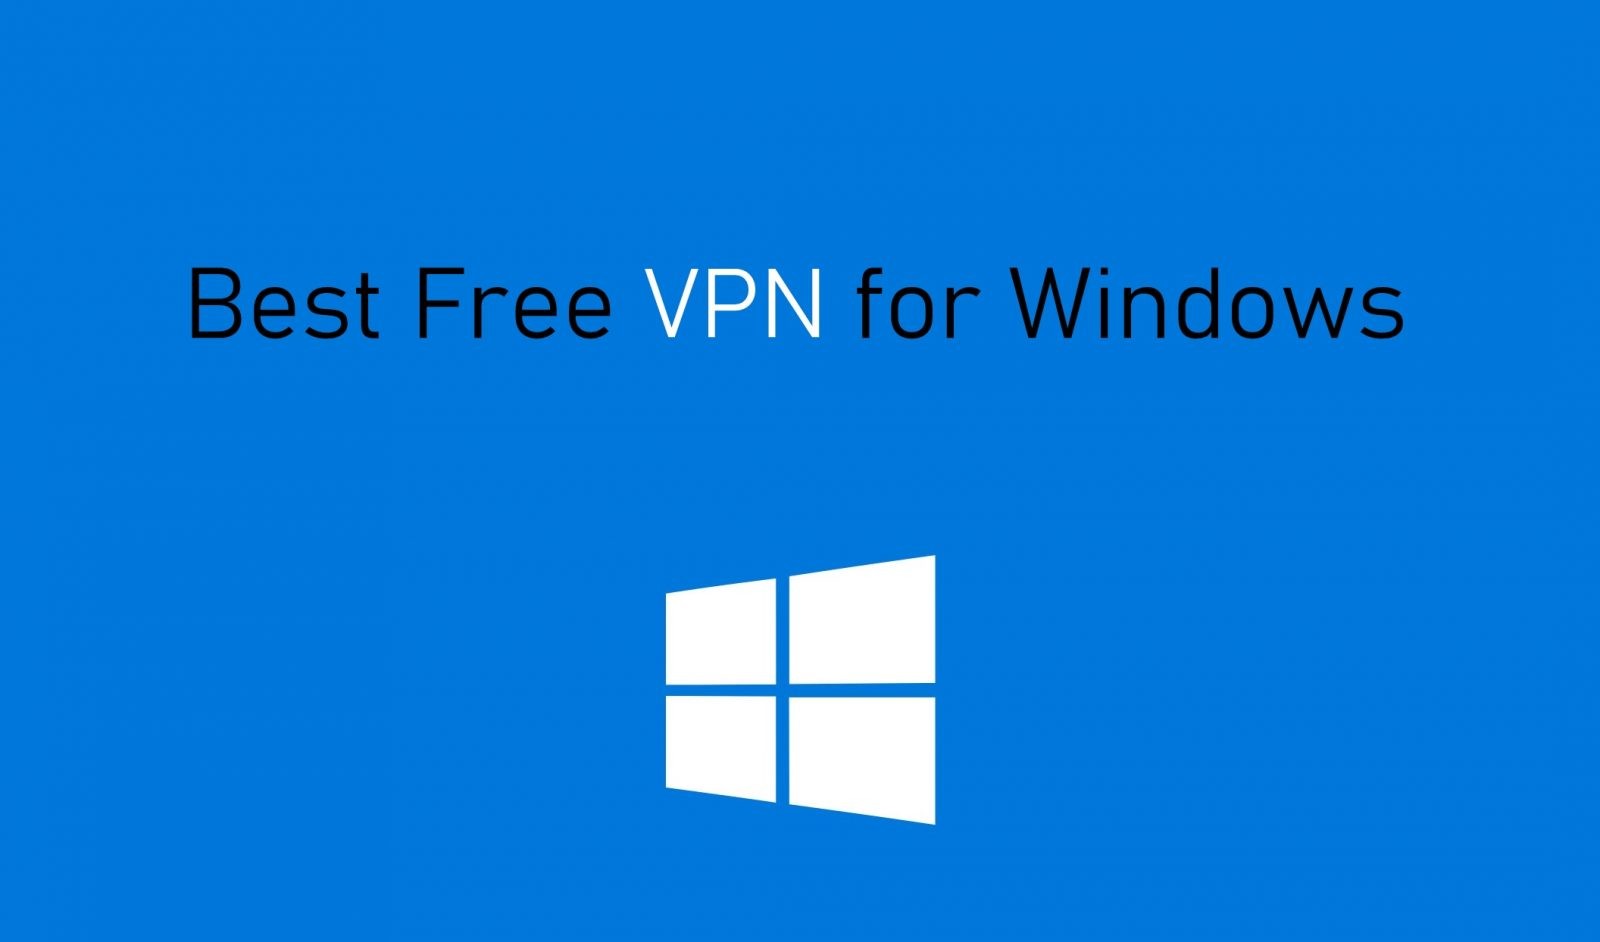 vpn for windows 8.1 download